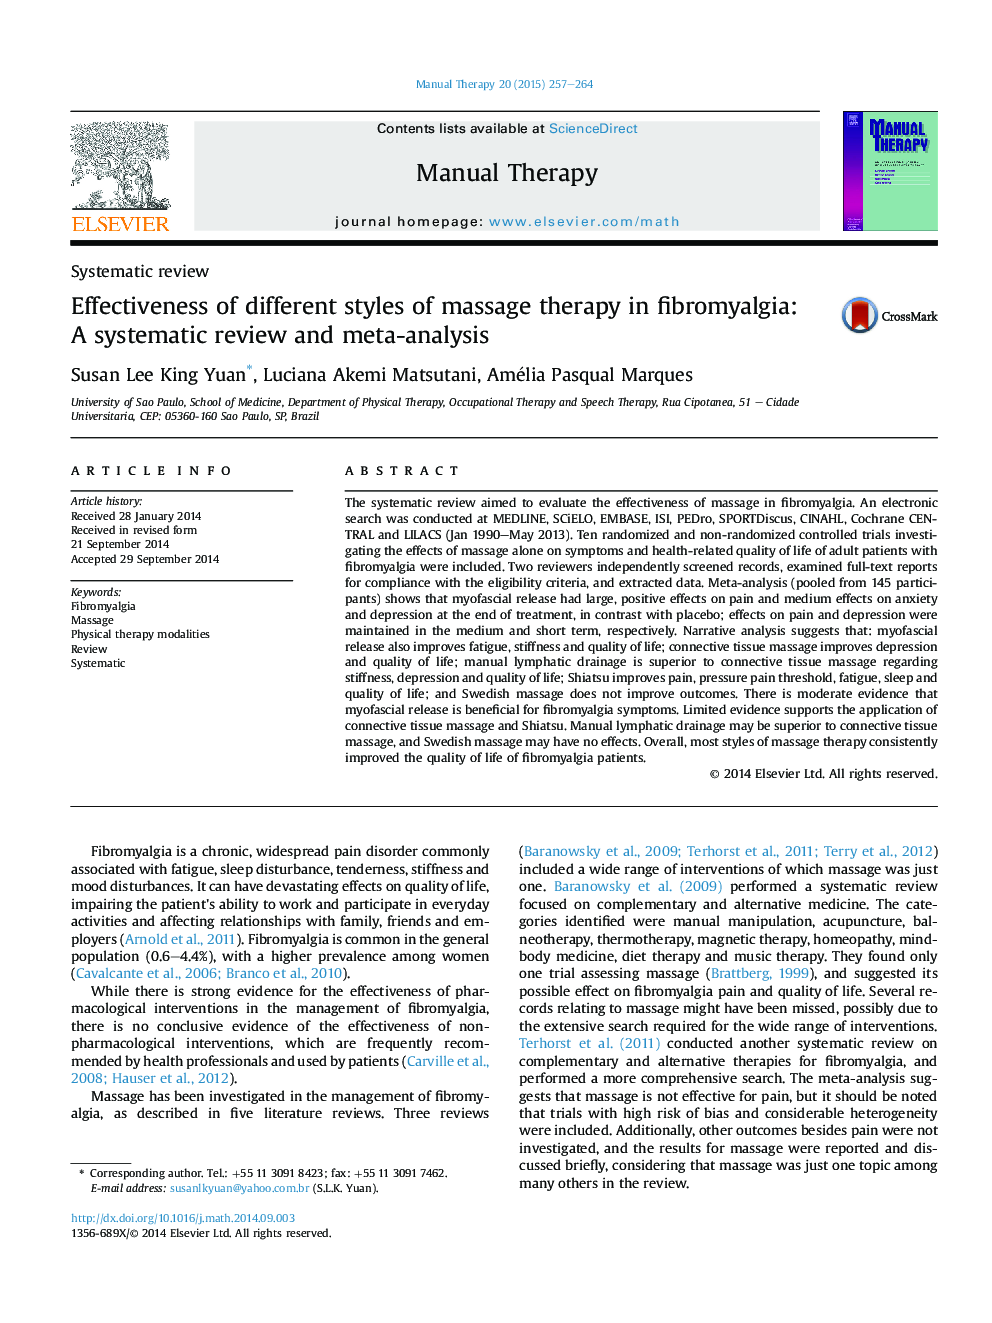 اثربخشی سبک های مختلف ماساژدرمانی در فیبرومیالژیا: یک بررسی سیستماتیک و متاآنالیز 